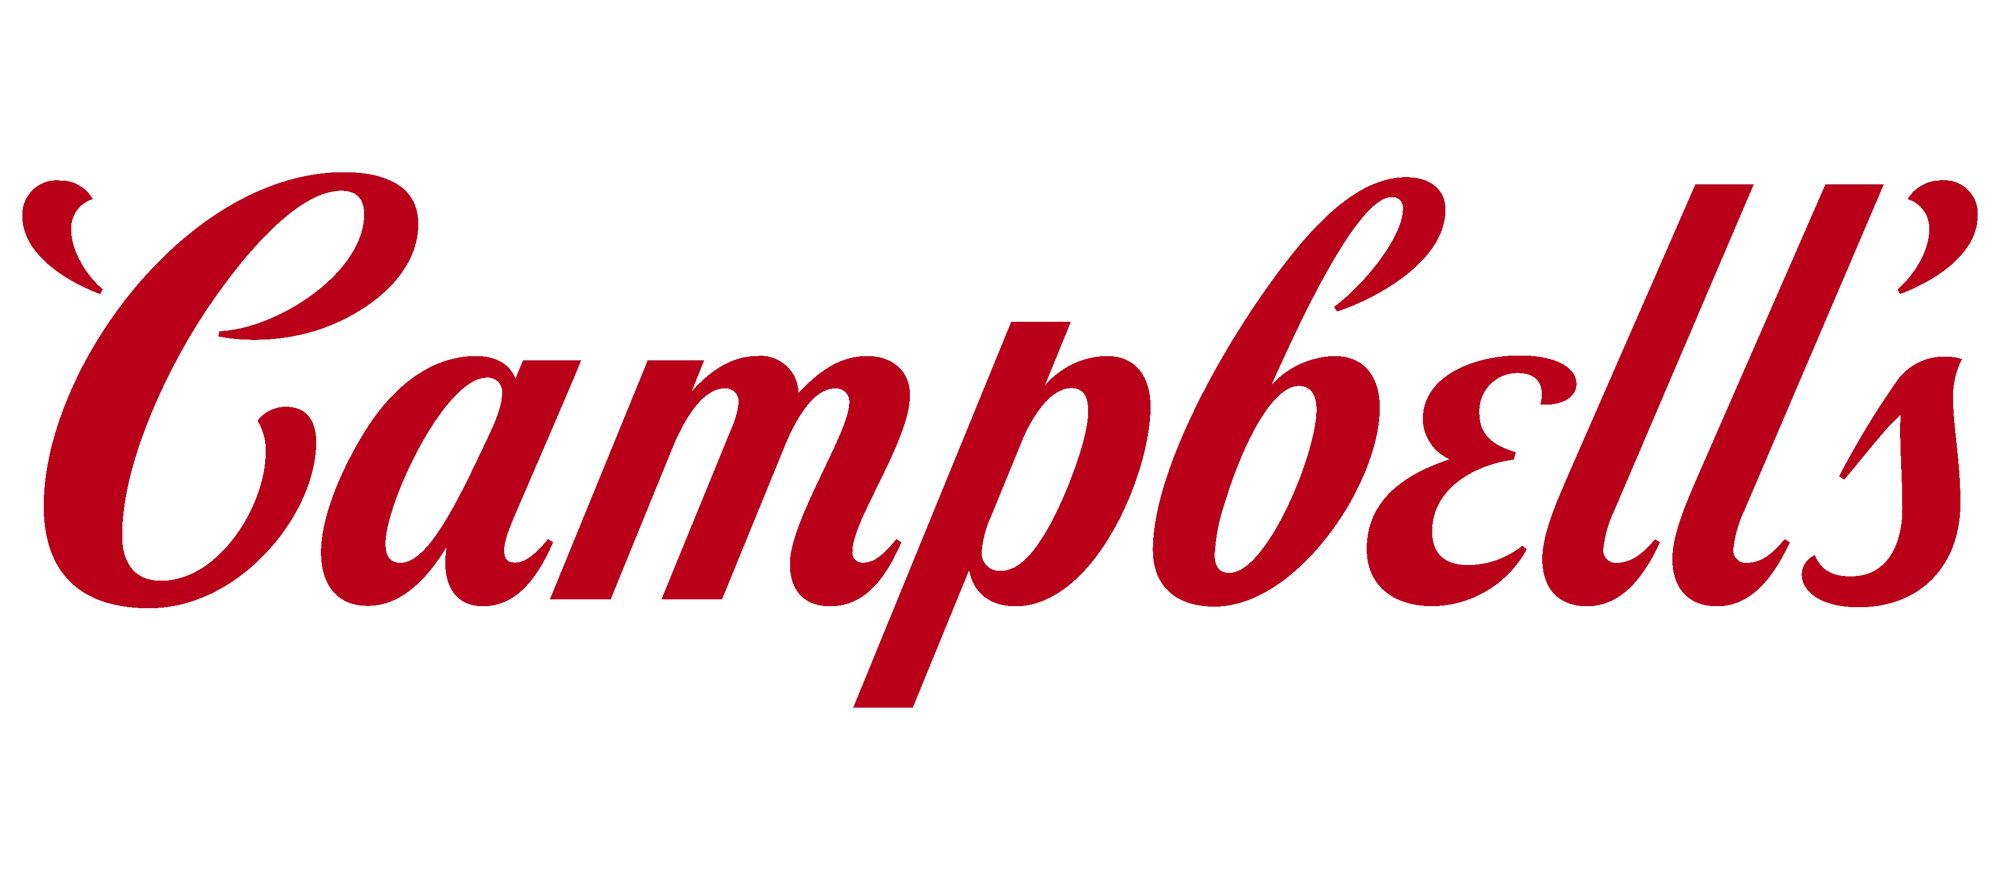 Campbells-logo